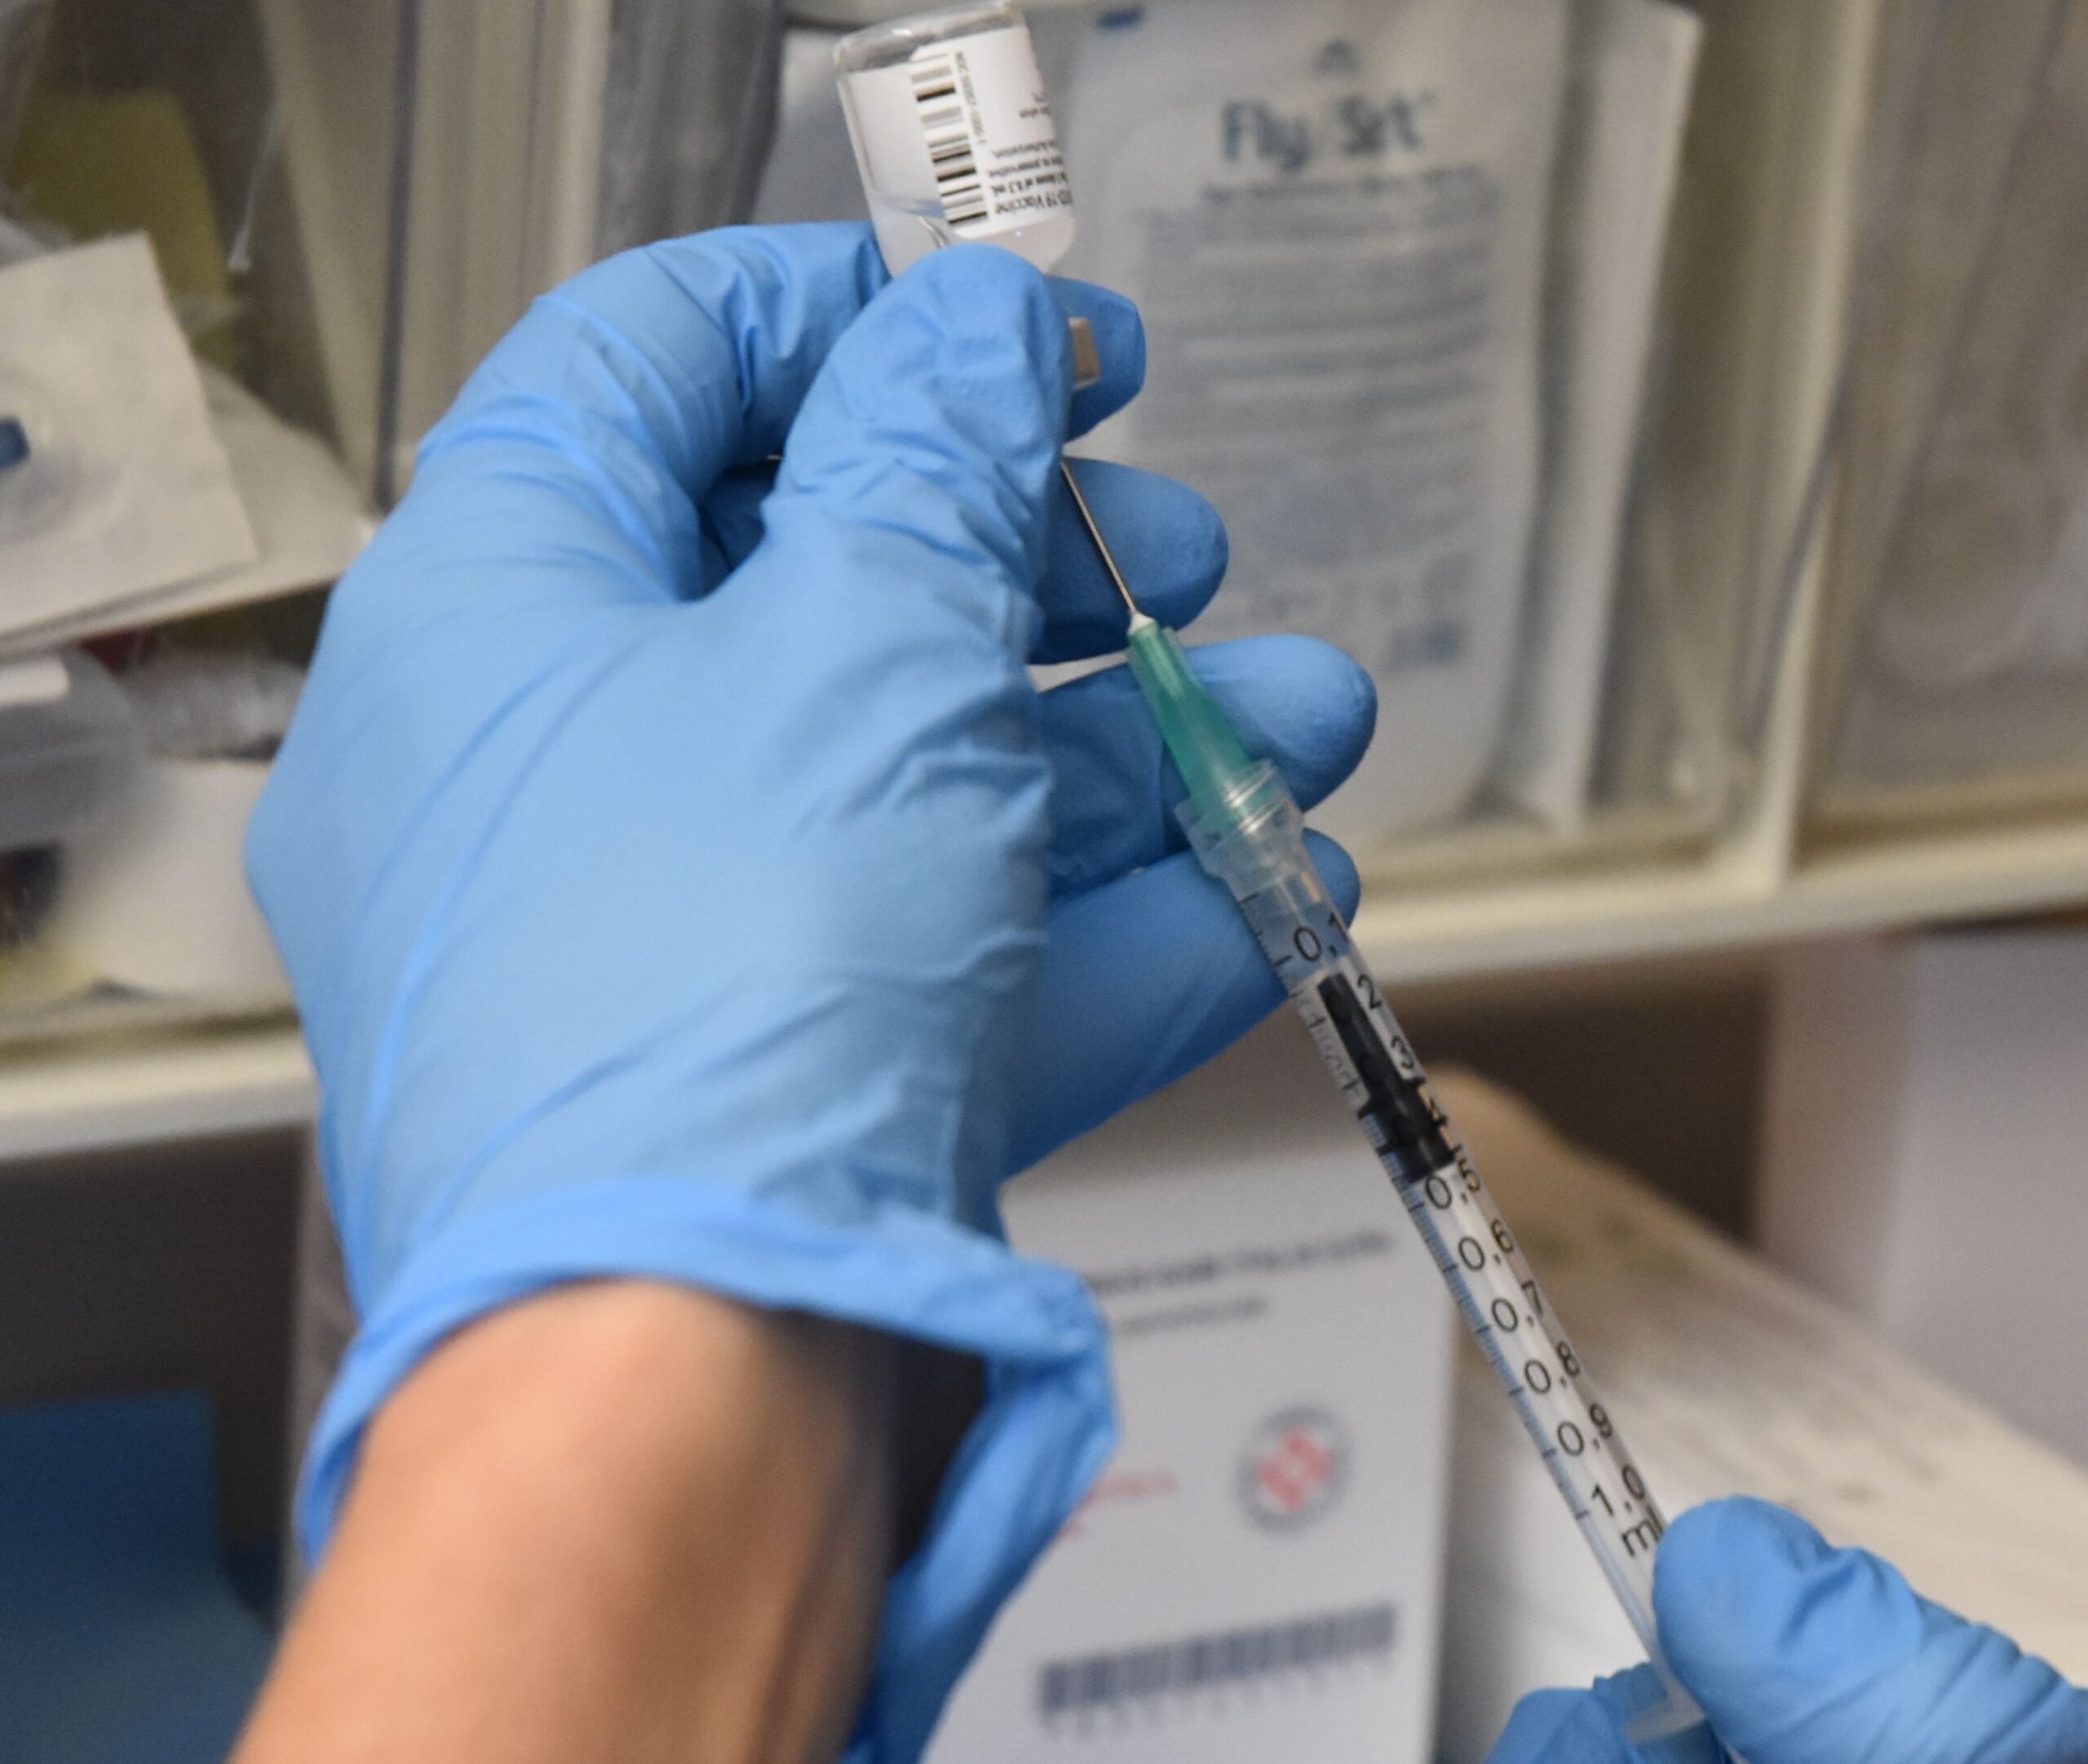 Vaccini anti Covid, Spinelli: “Nessuna dose deteriorata o inutilizzata”